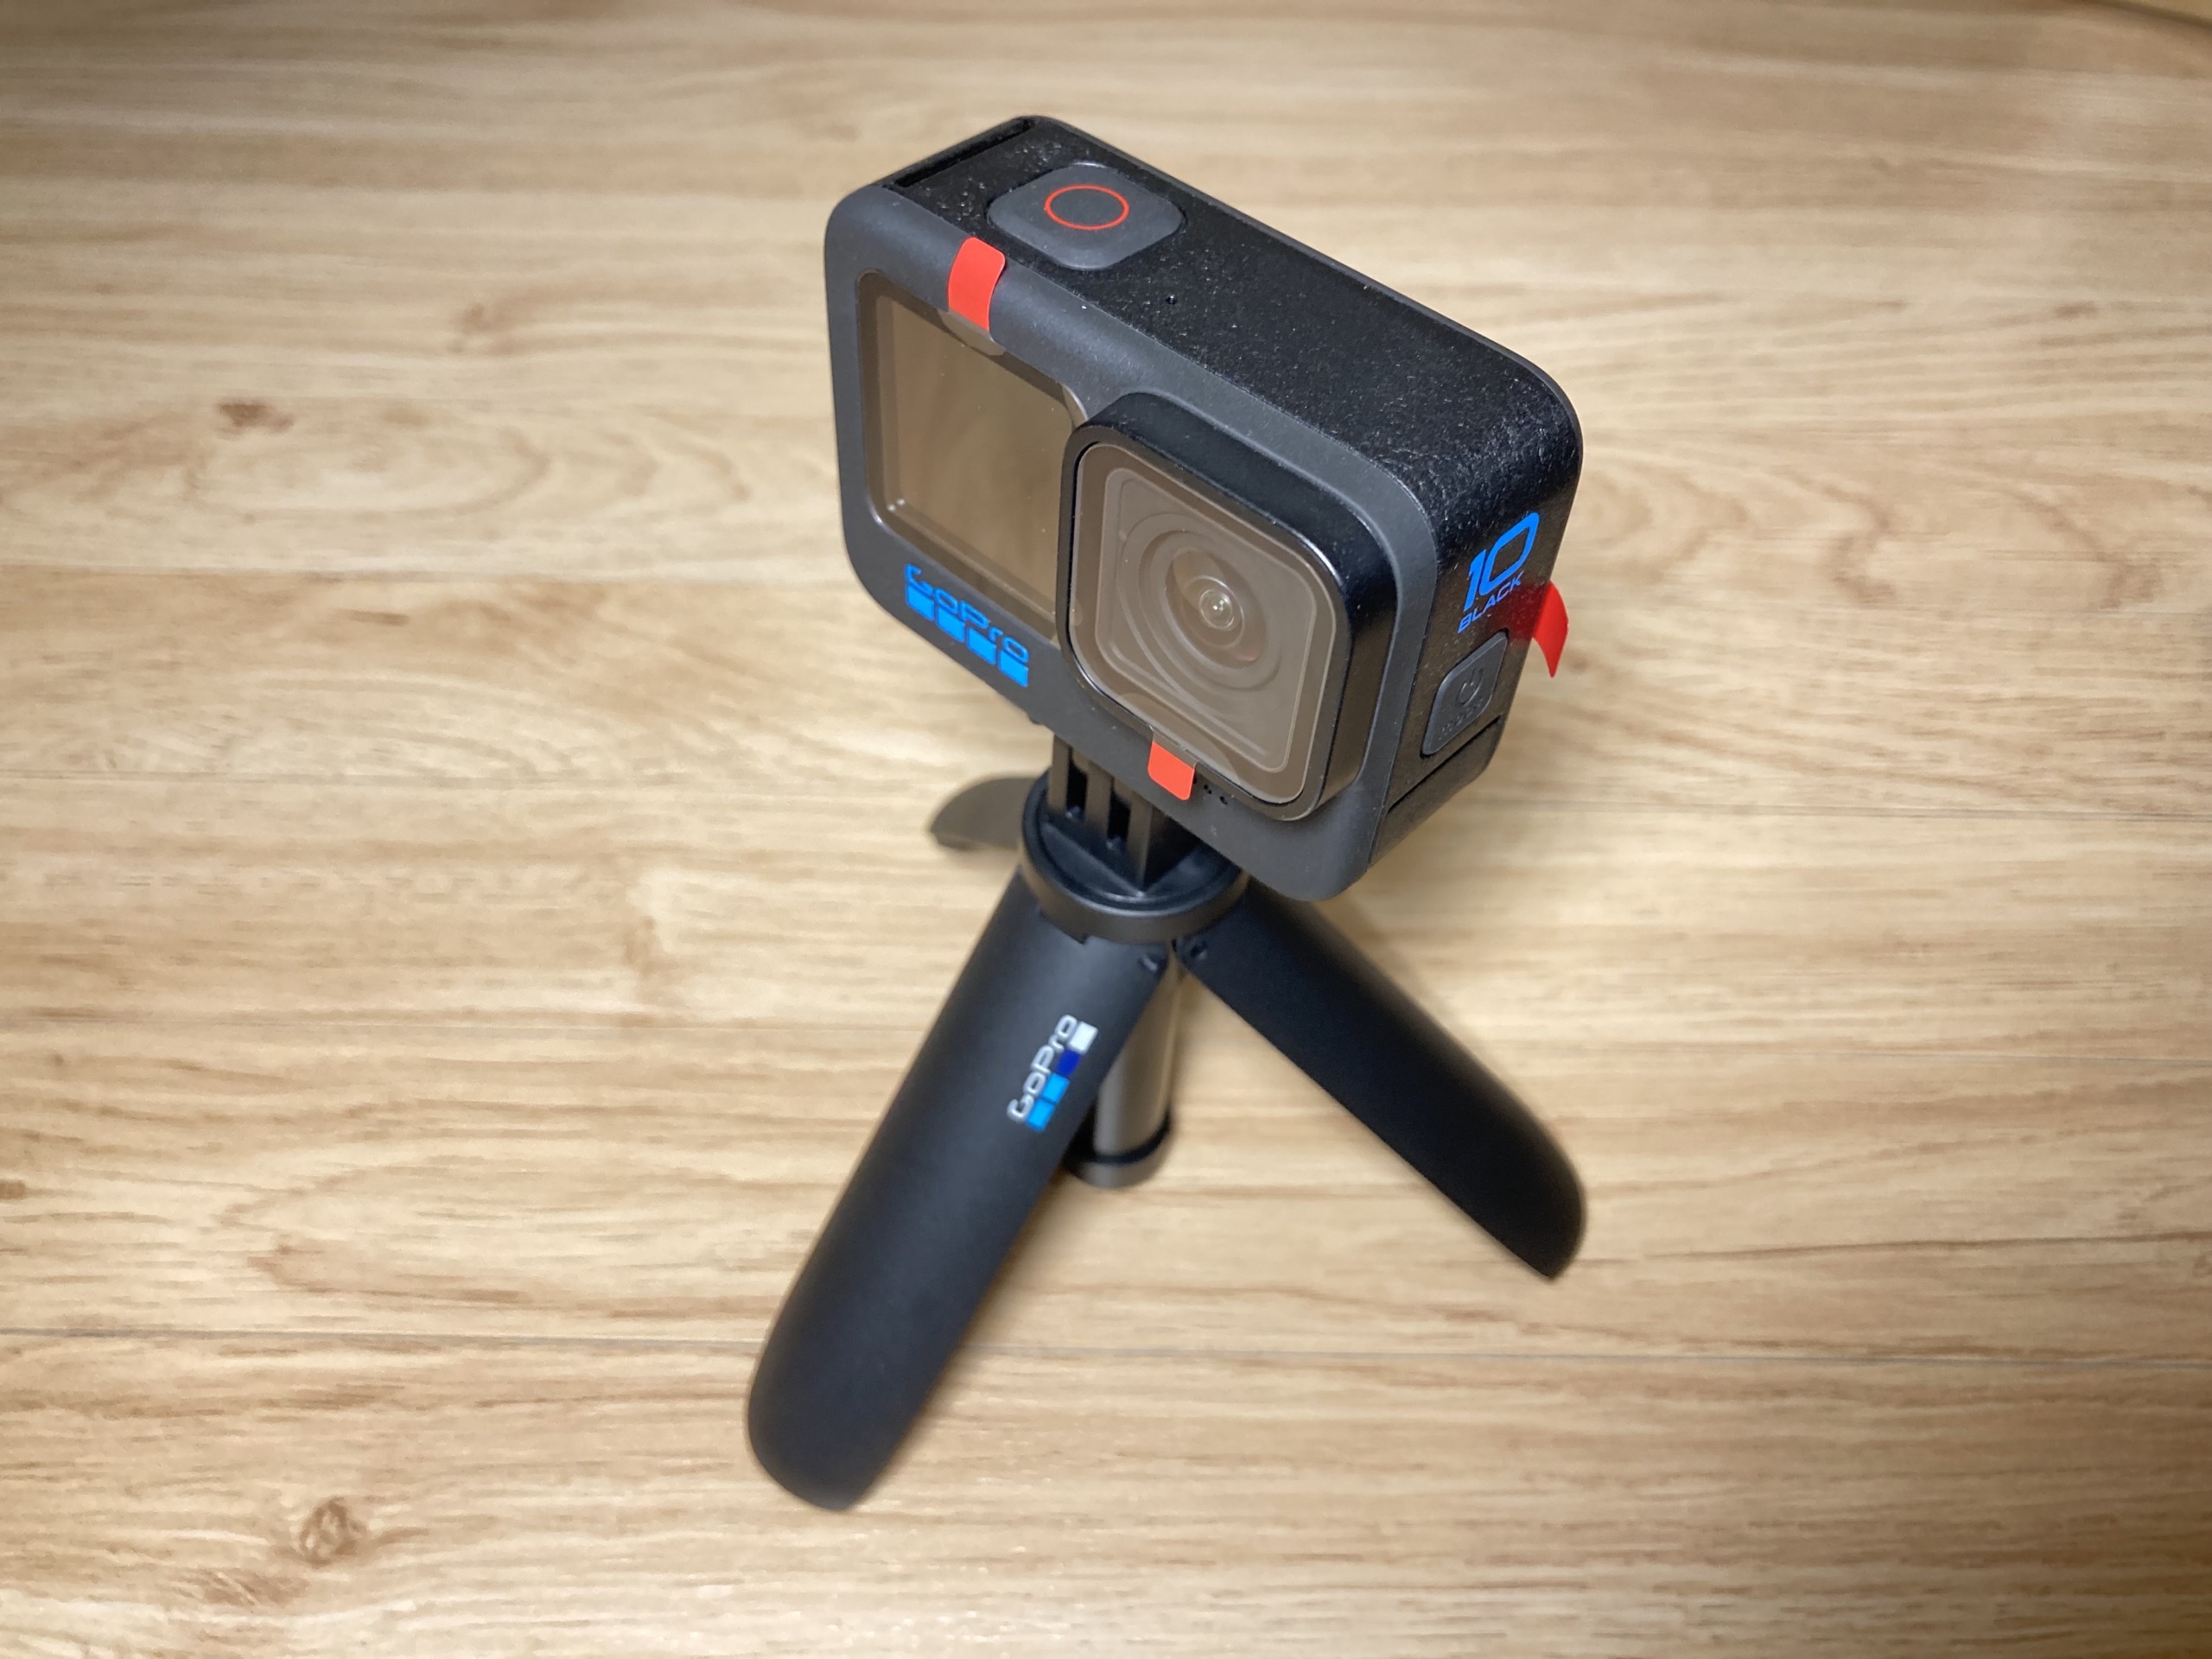 モトブログ】GoPro Hero10 Black アクセサリーセットを購入【結論 